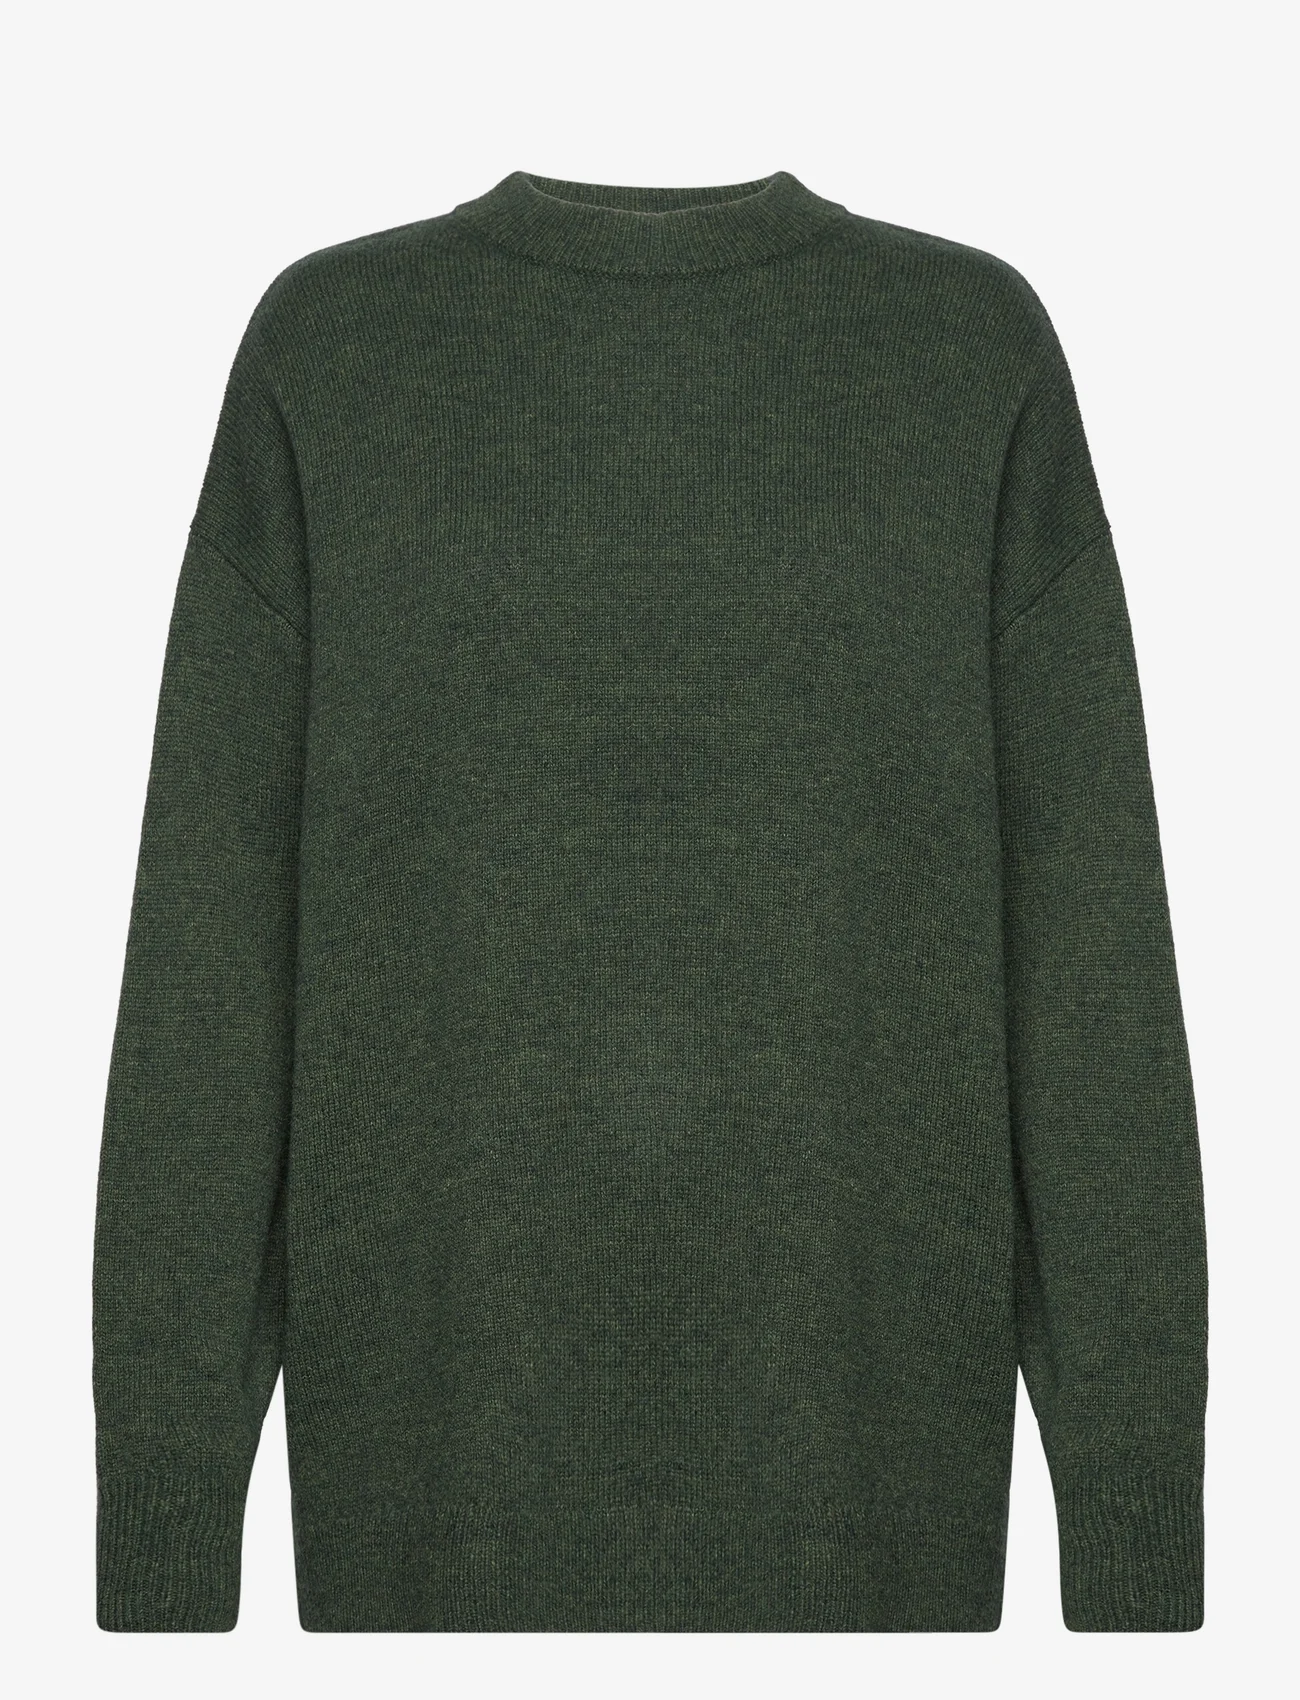 NORR - Sinna o-neck knit top - dark green melange - 0